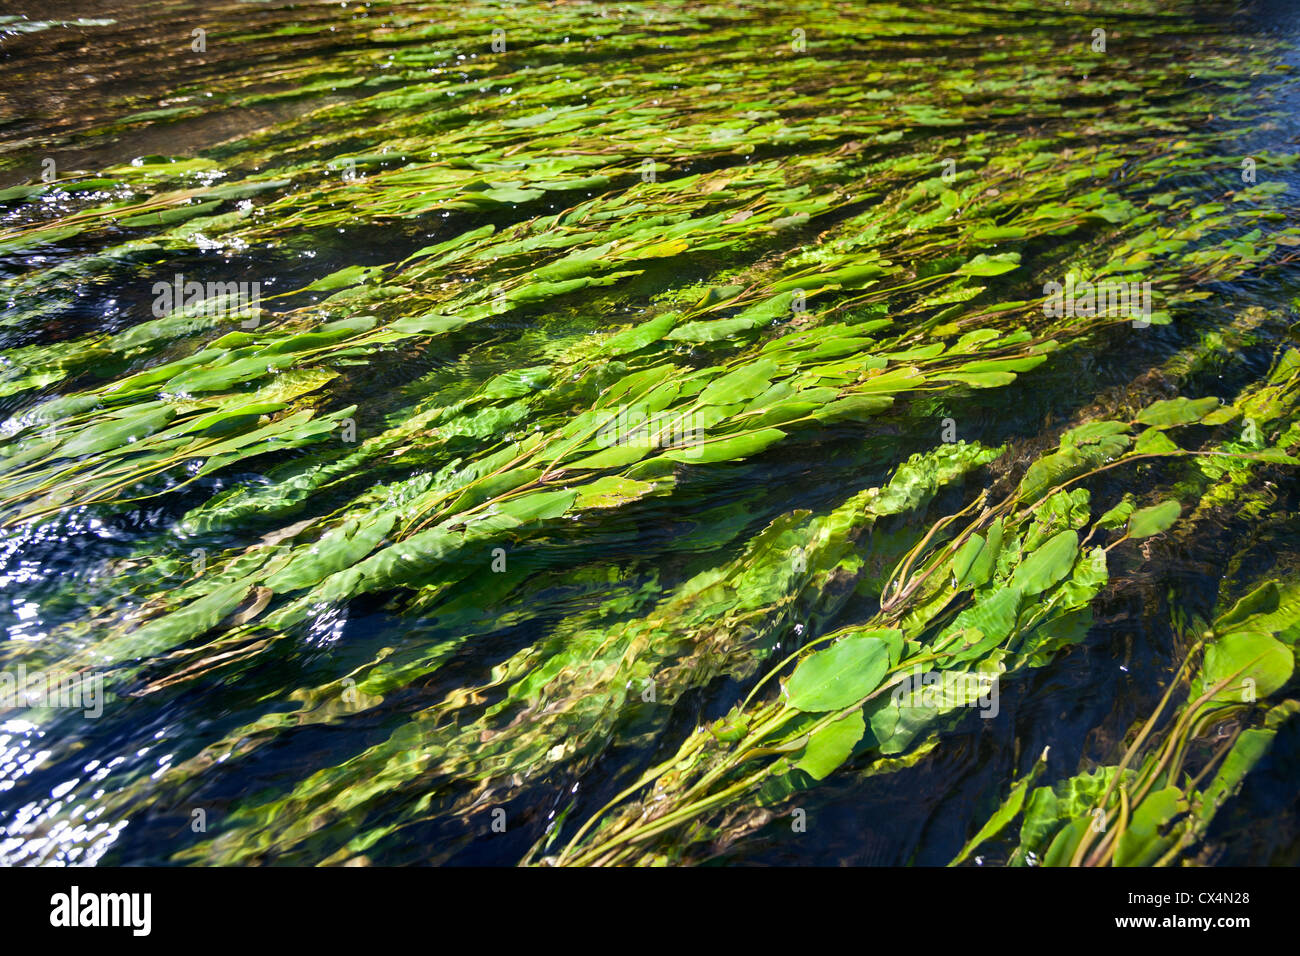 Longleaf pondweed (Potamogeton nodosus) floating in the Allier river current (Allier - Auvergne - France). Potamots noueux. Stock Photo